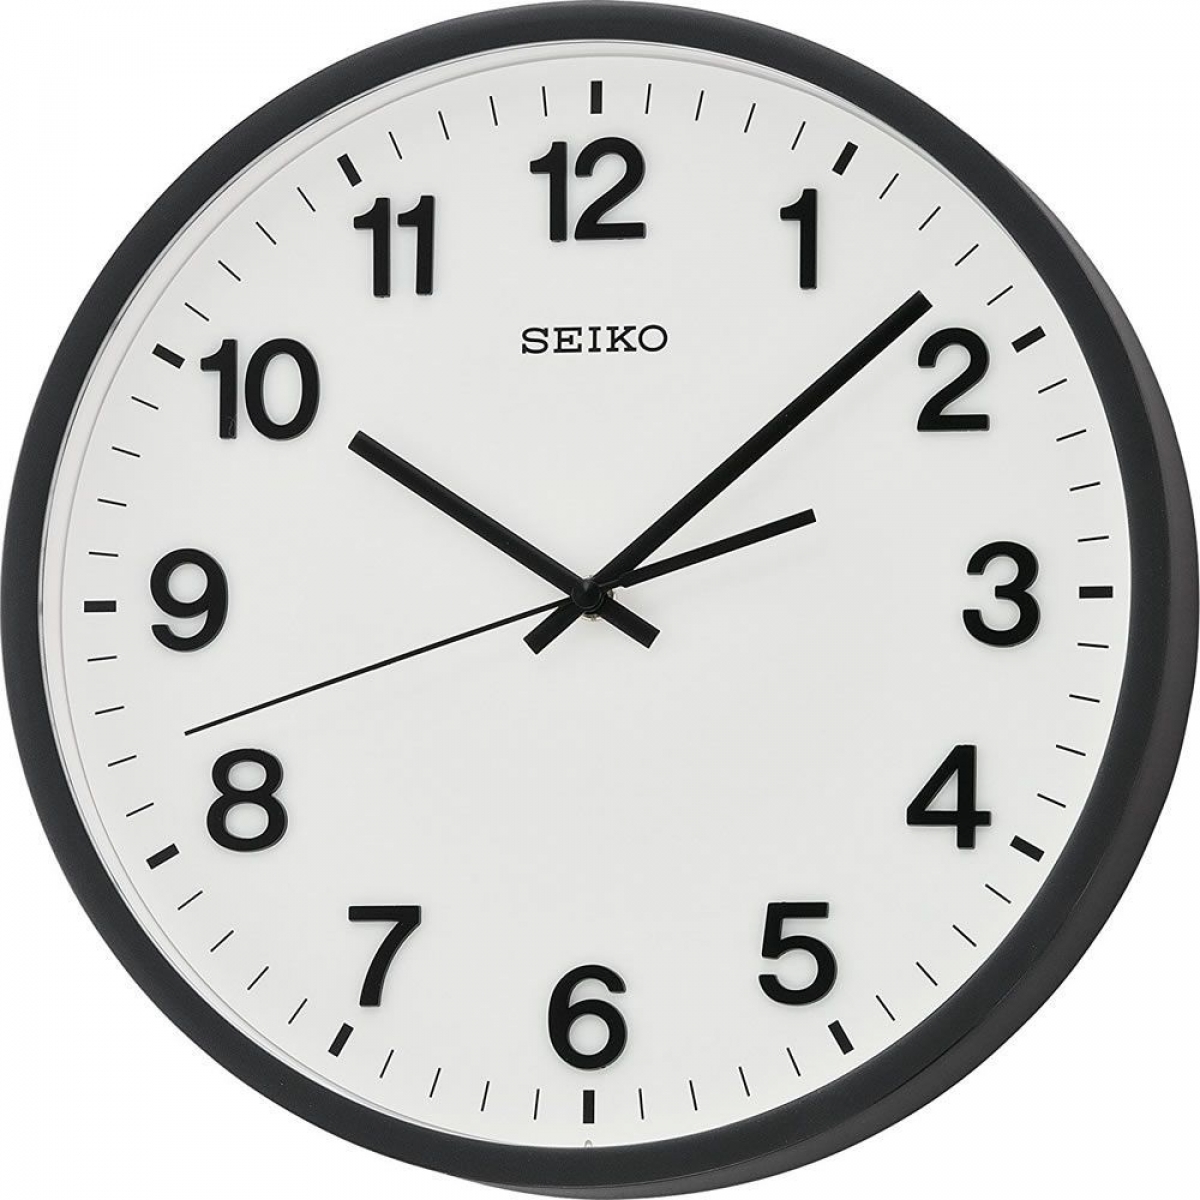 Часы стрелками московское время. Настенные часы Seiko qxa560an. Настенные часы Seiko qxa014an. Настенные часы Seiko qxa020a. Настенные часы Seiko qxa728k.